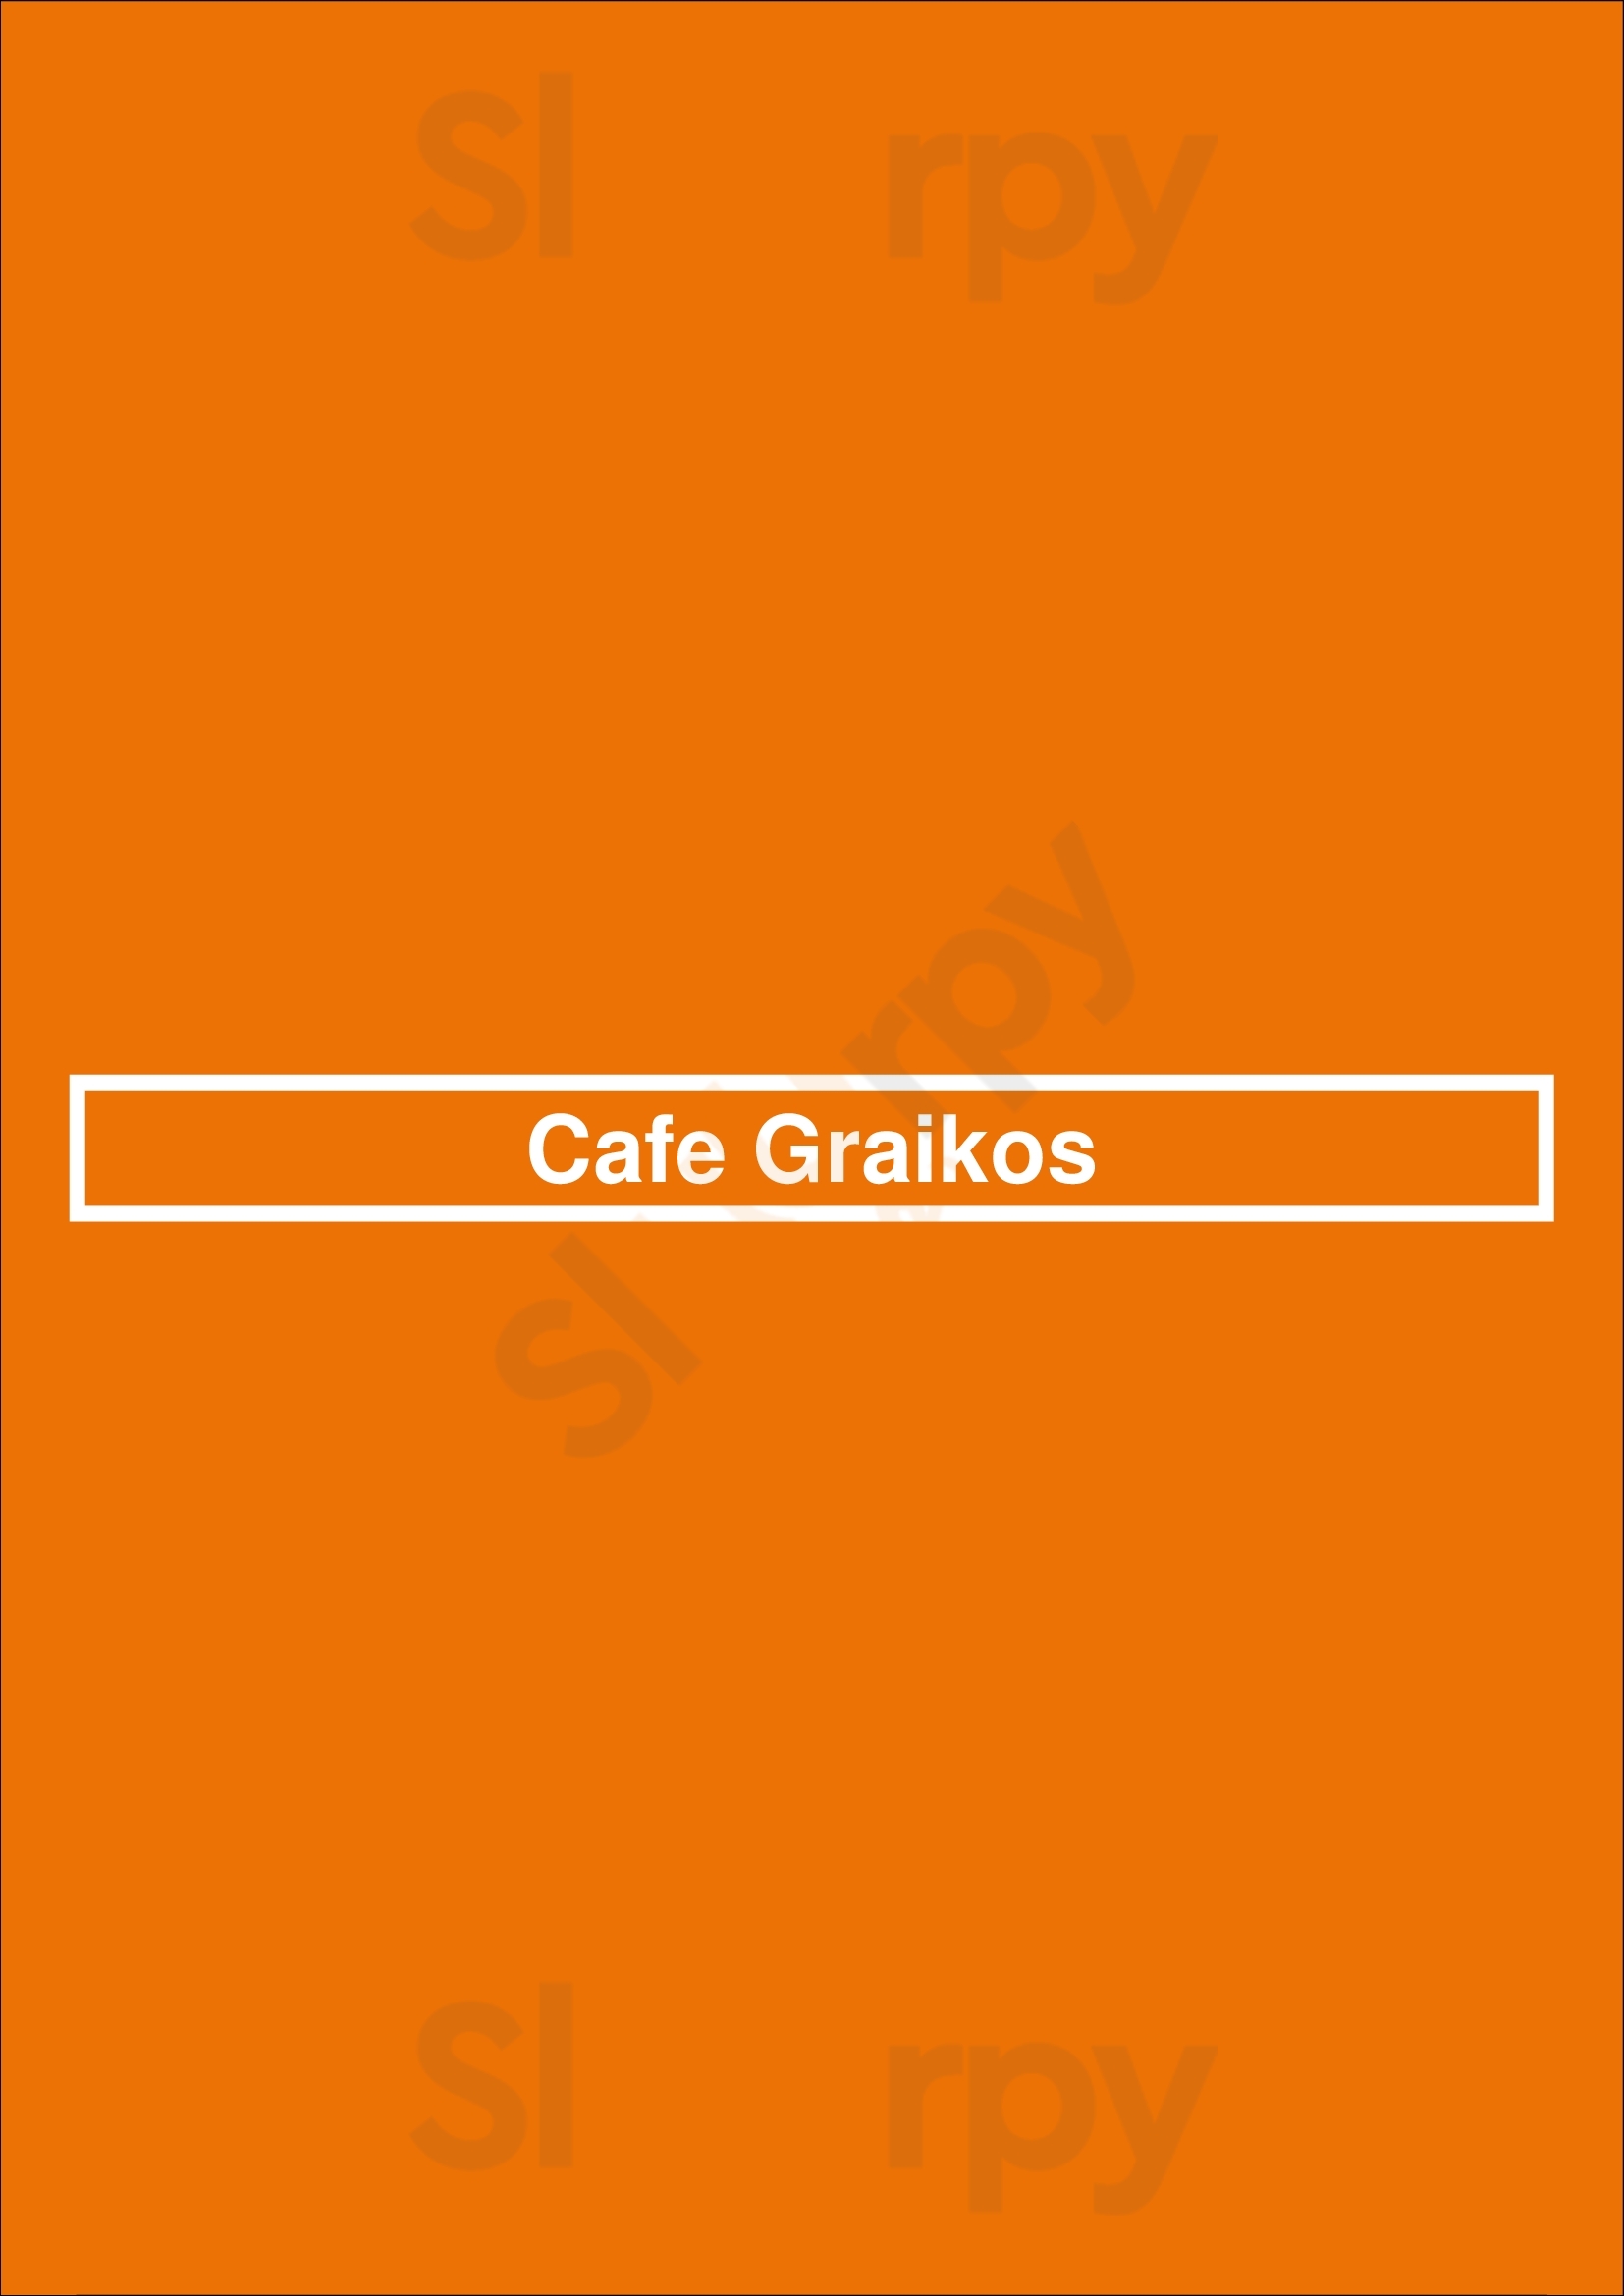 Cafe Graikos Los Angeles Menu - 1